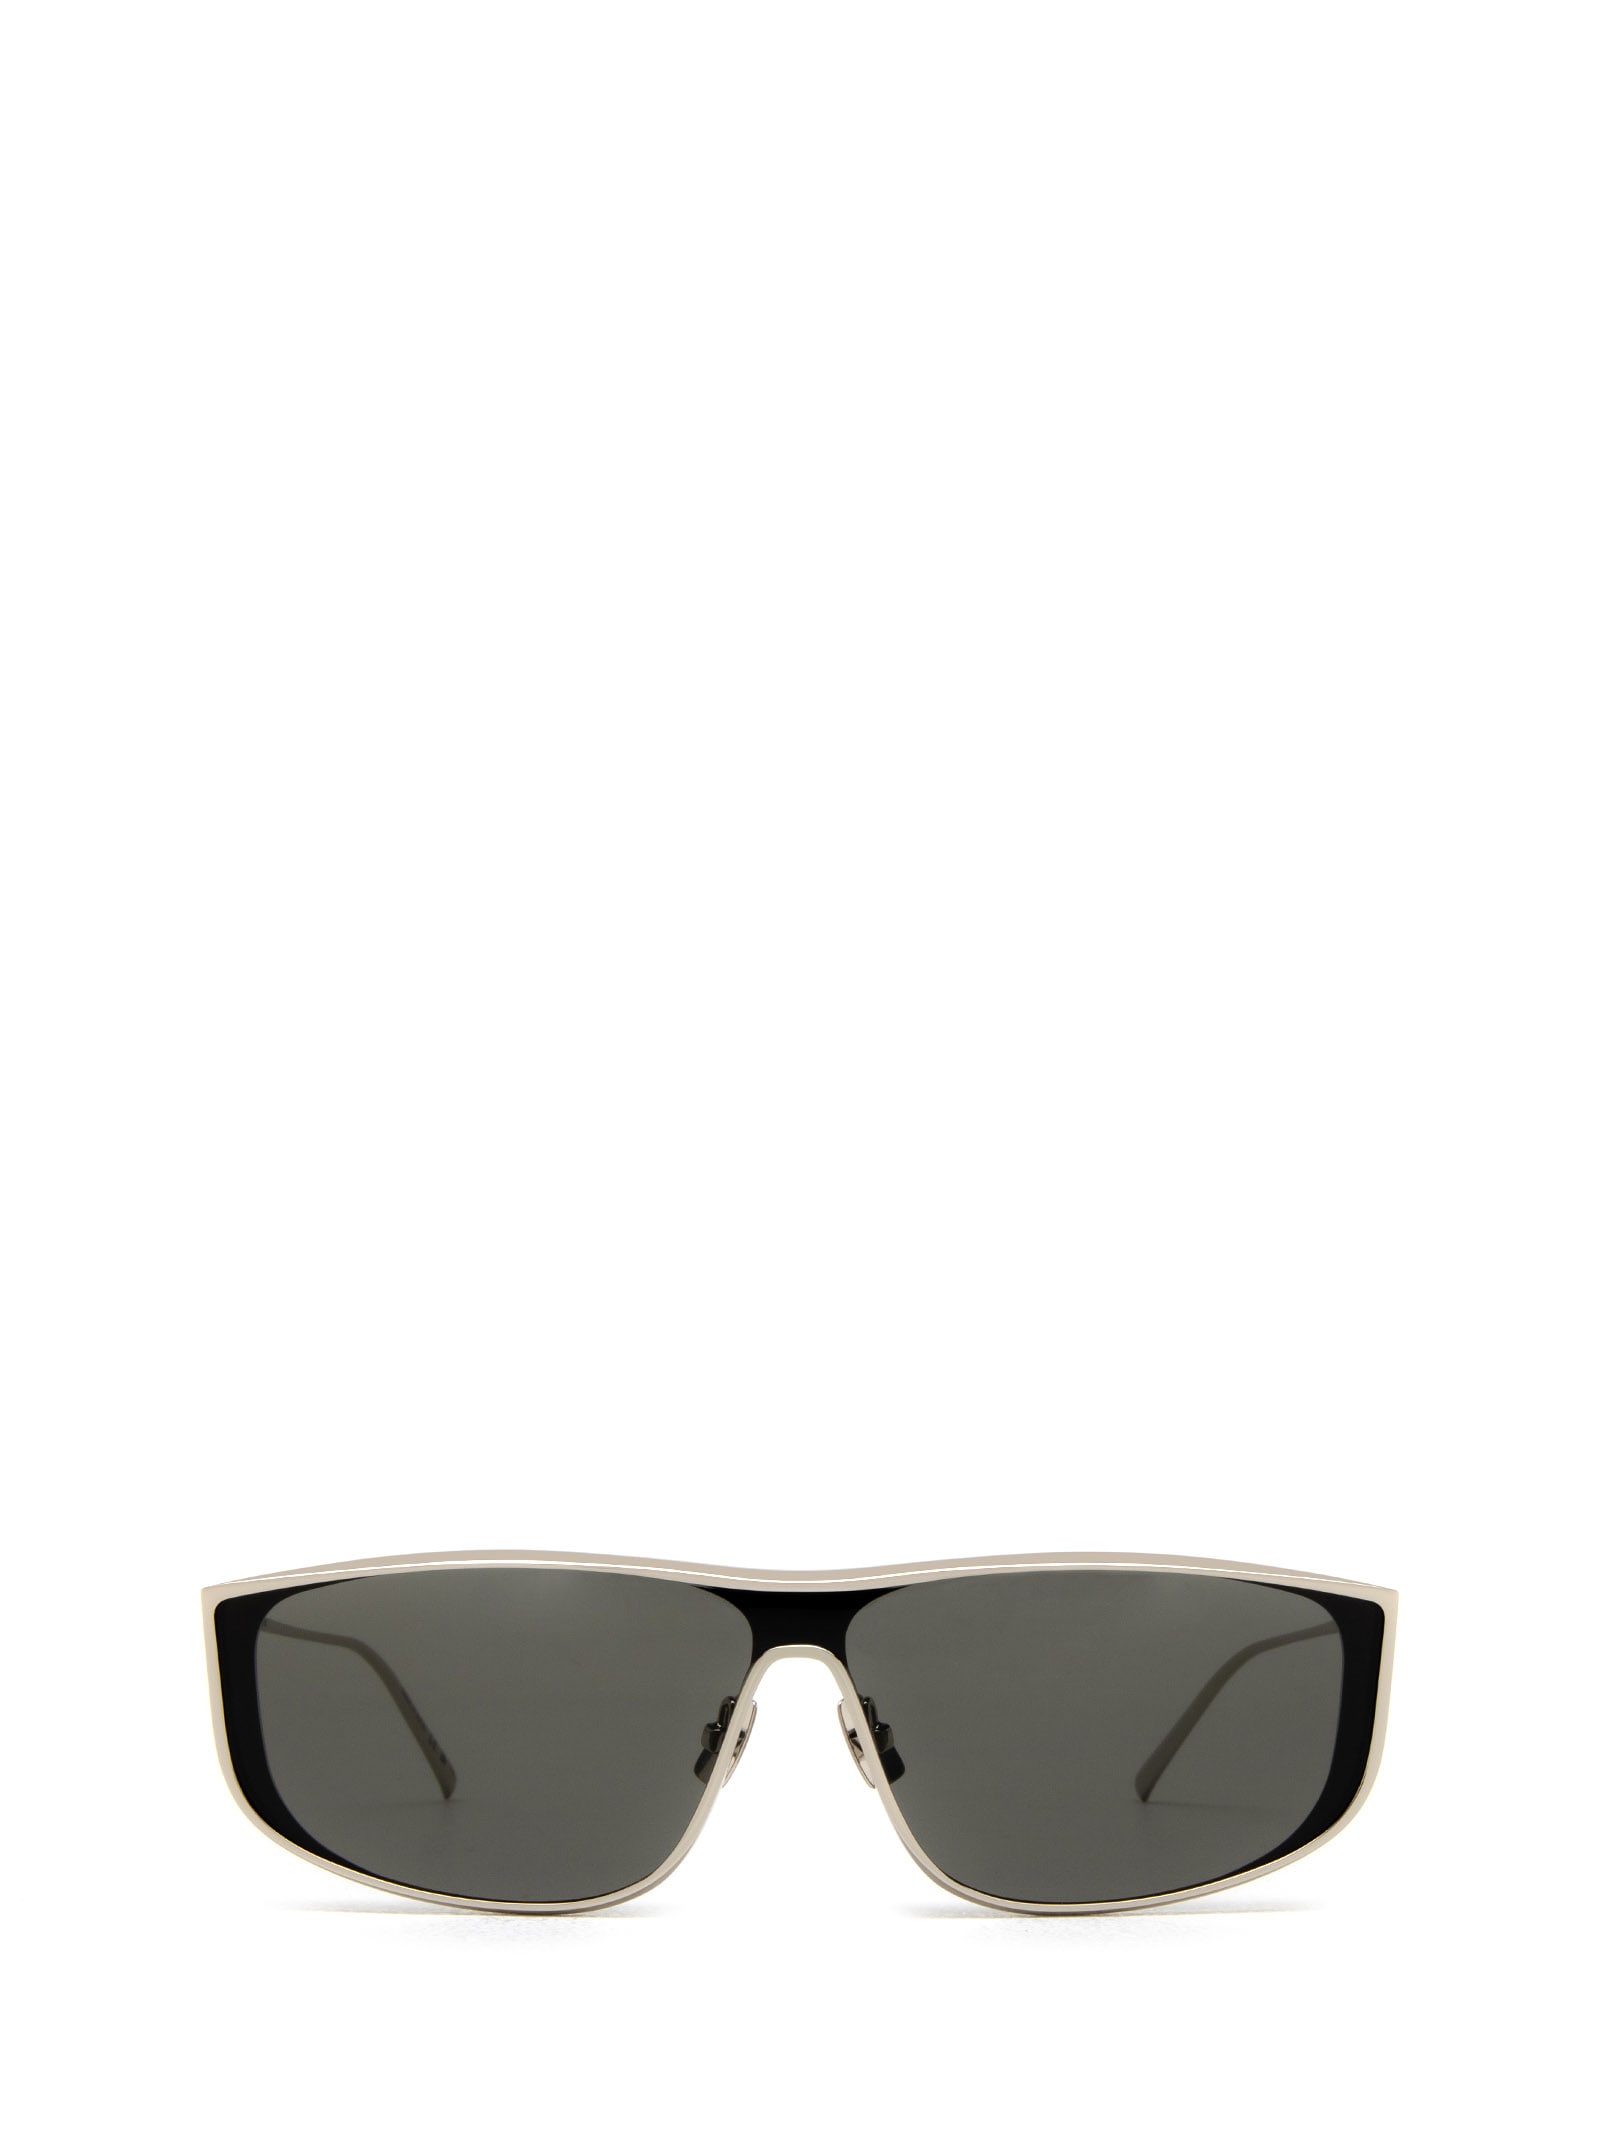 Sl 605 Silver Sunglasses